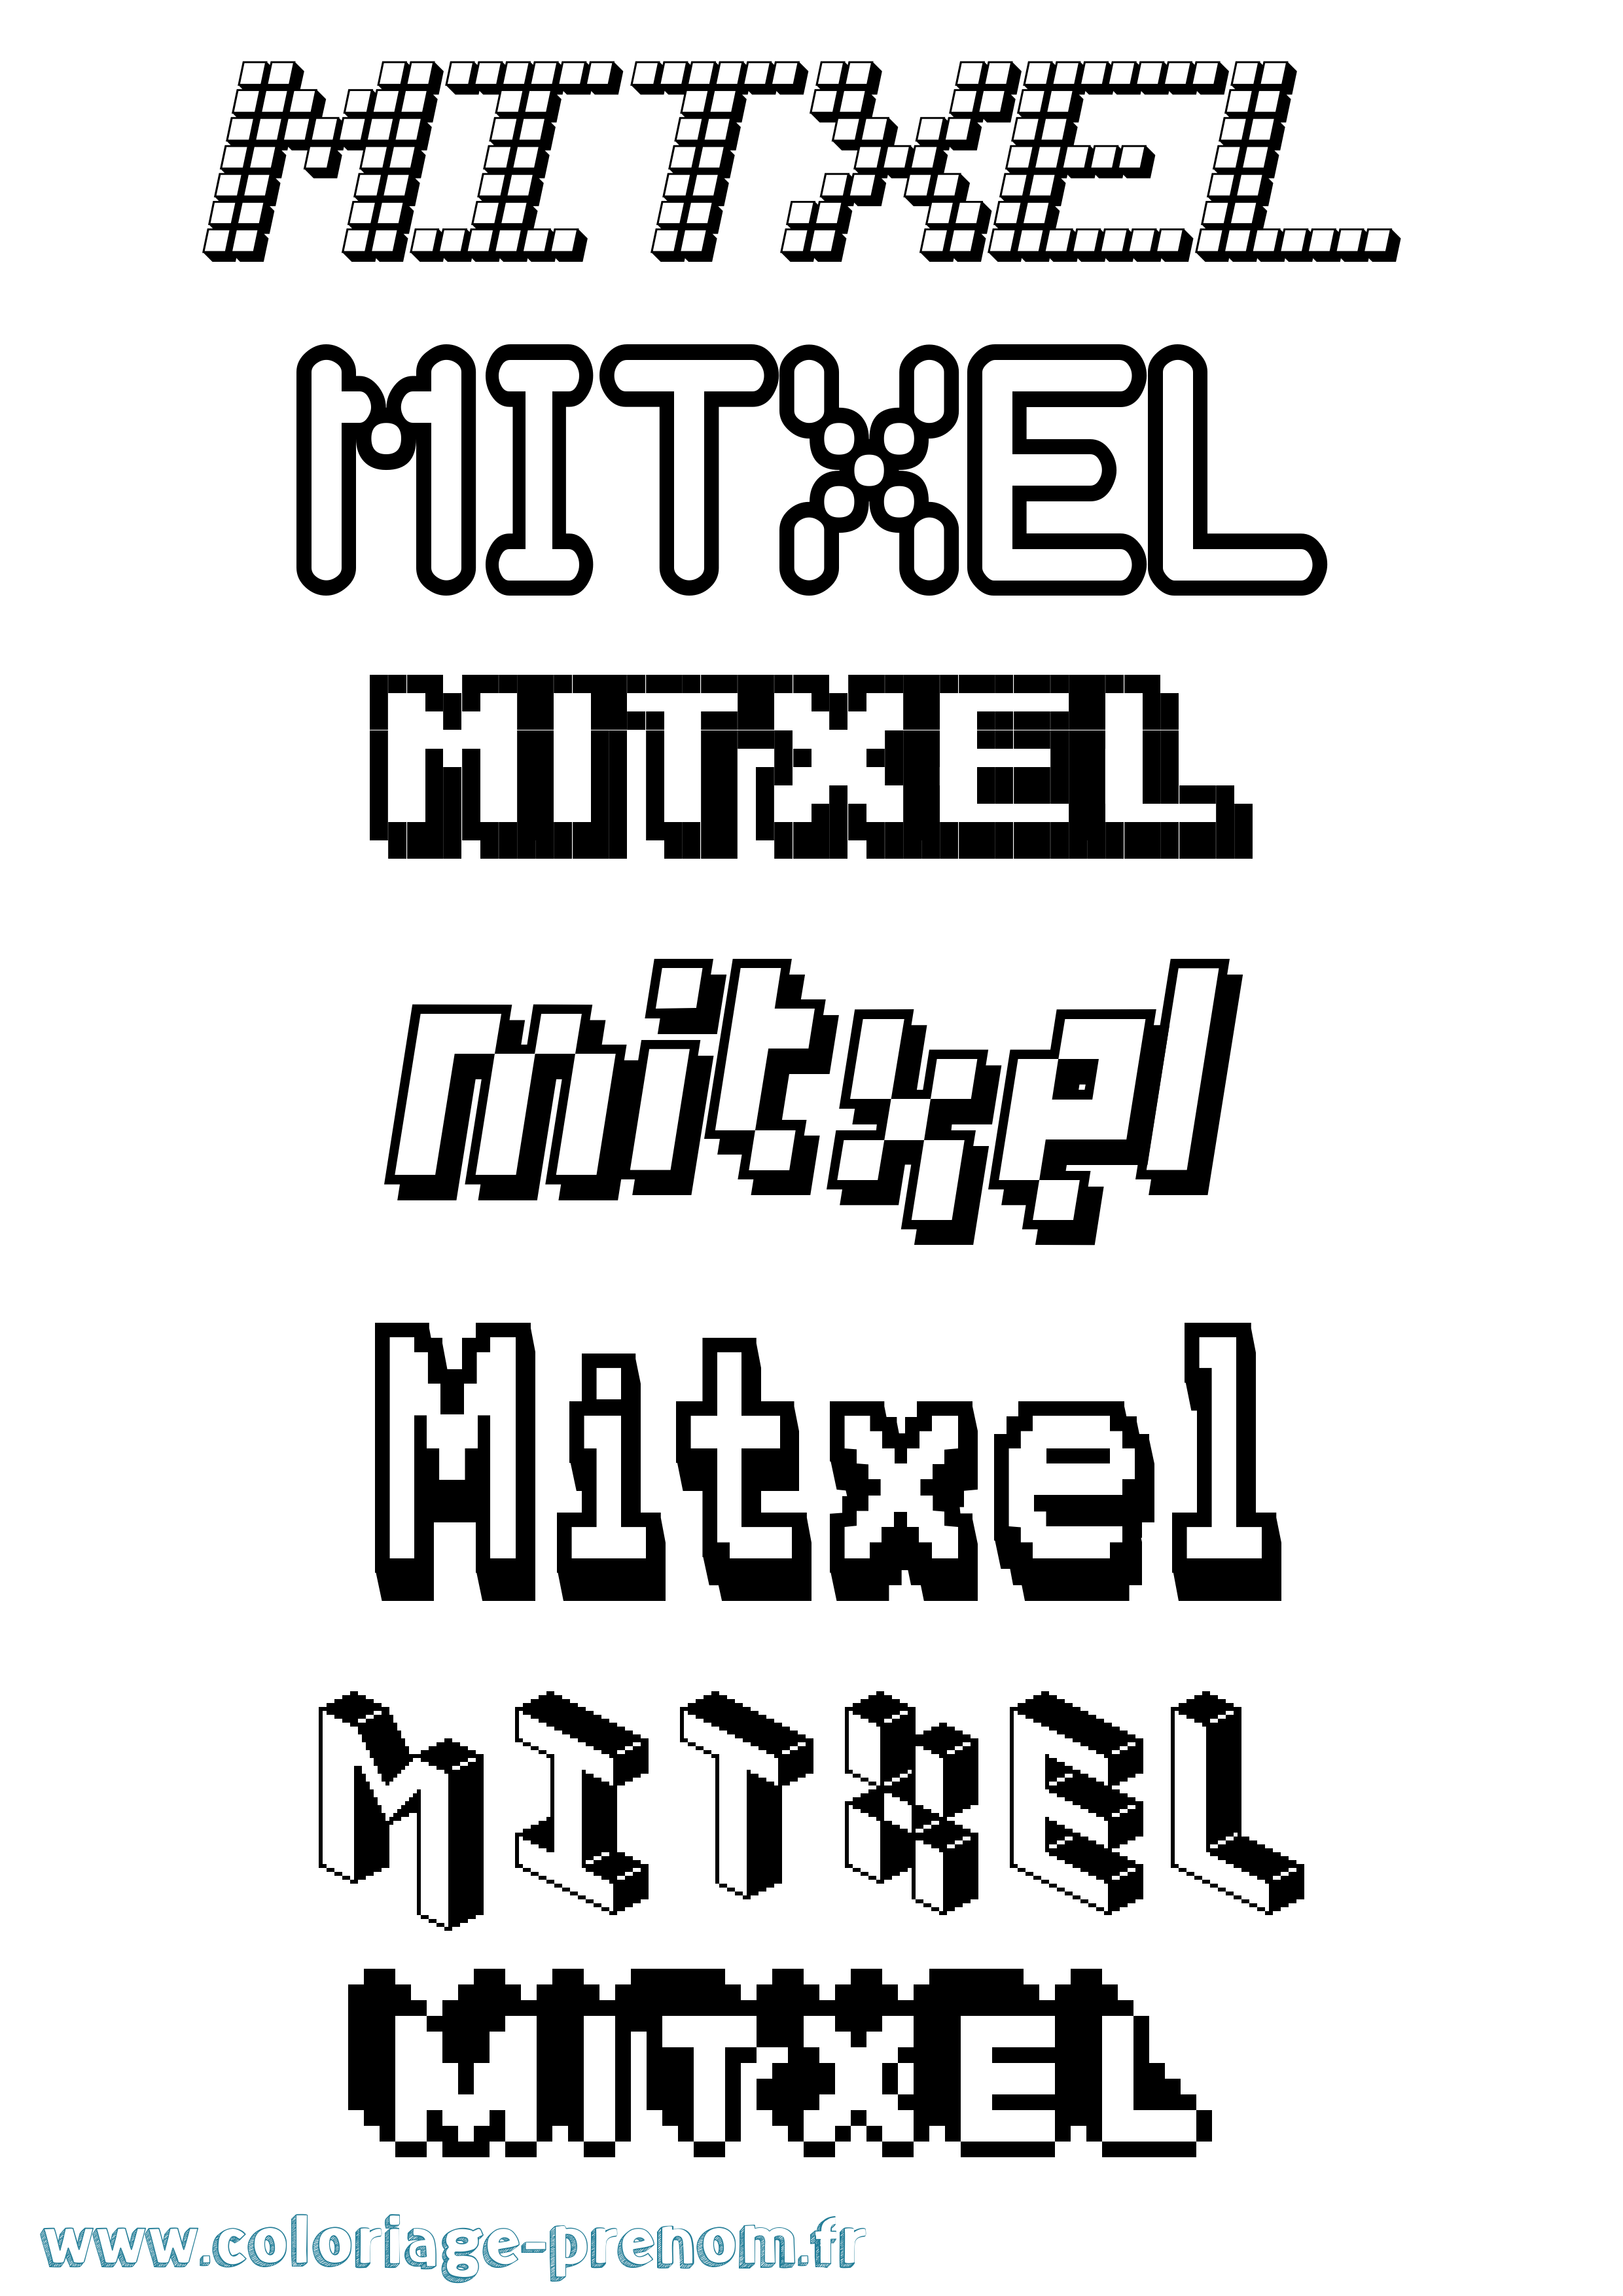 Coloriage prénom Mitxel Pixel